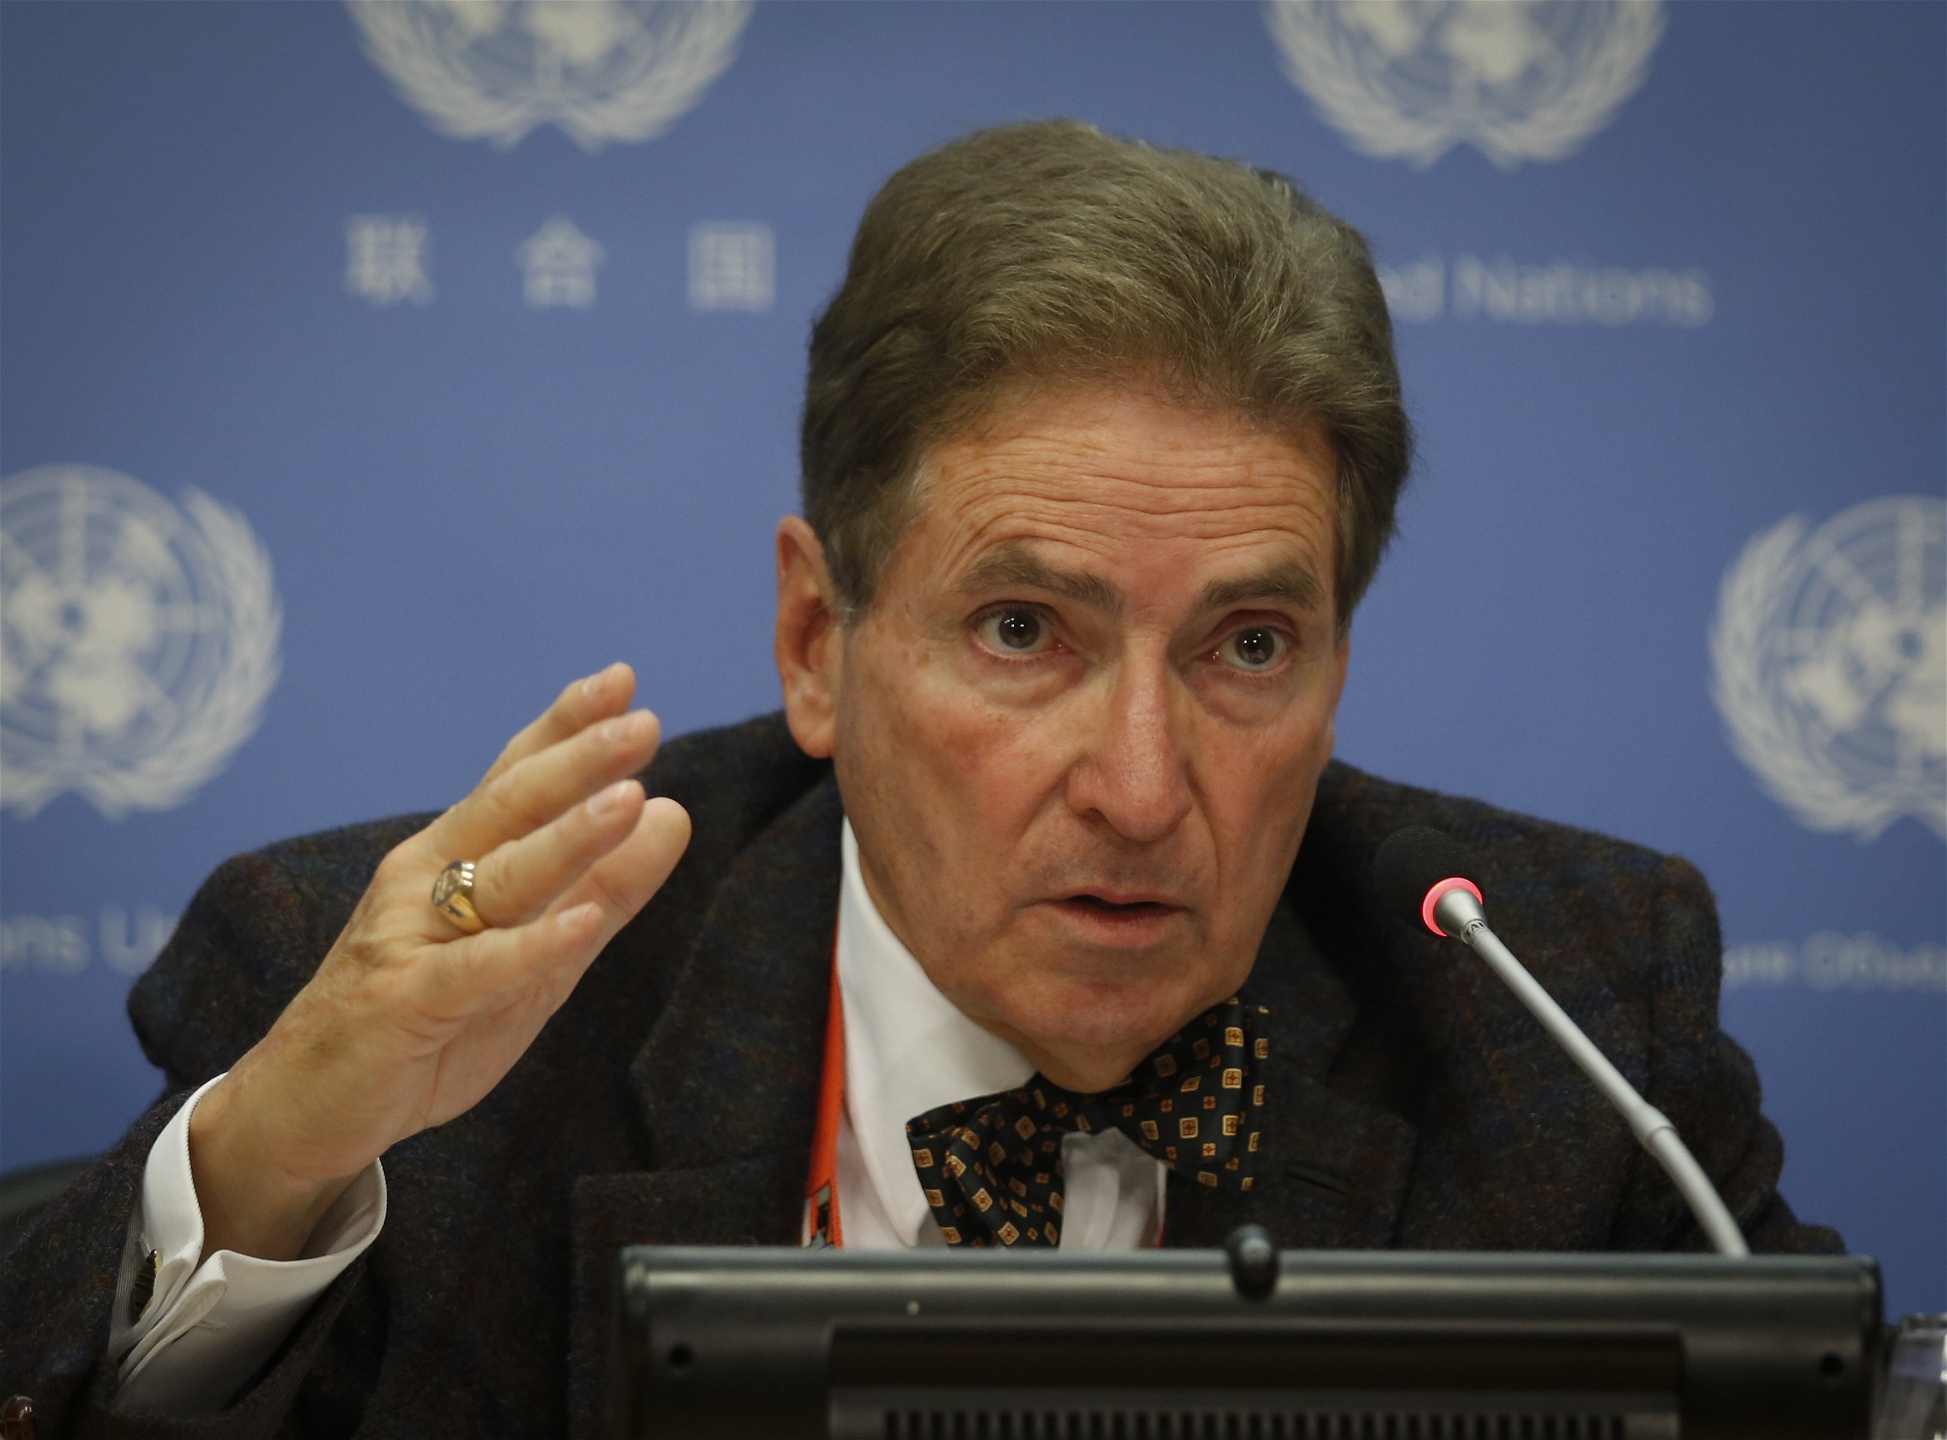 Alfred de Zayas, oberoende FN-expert, vid sitt anförande om hur skatteflykten ska stoppas i FN:s högkvarter den 21 oktober.